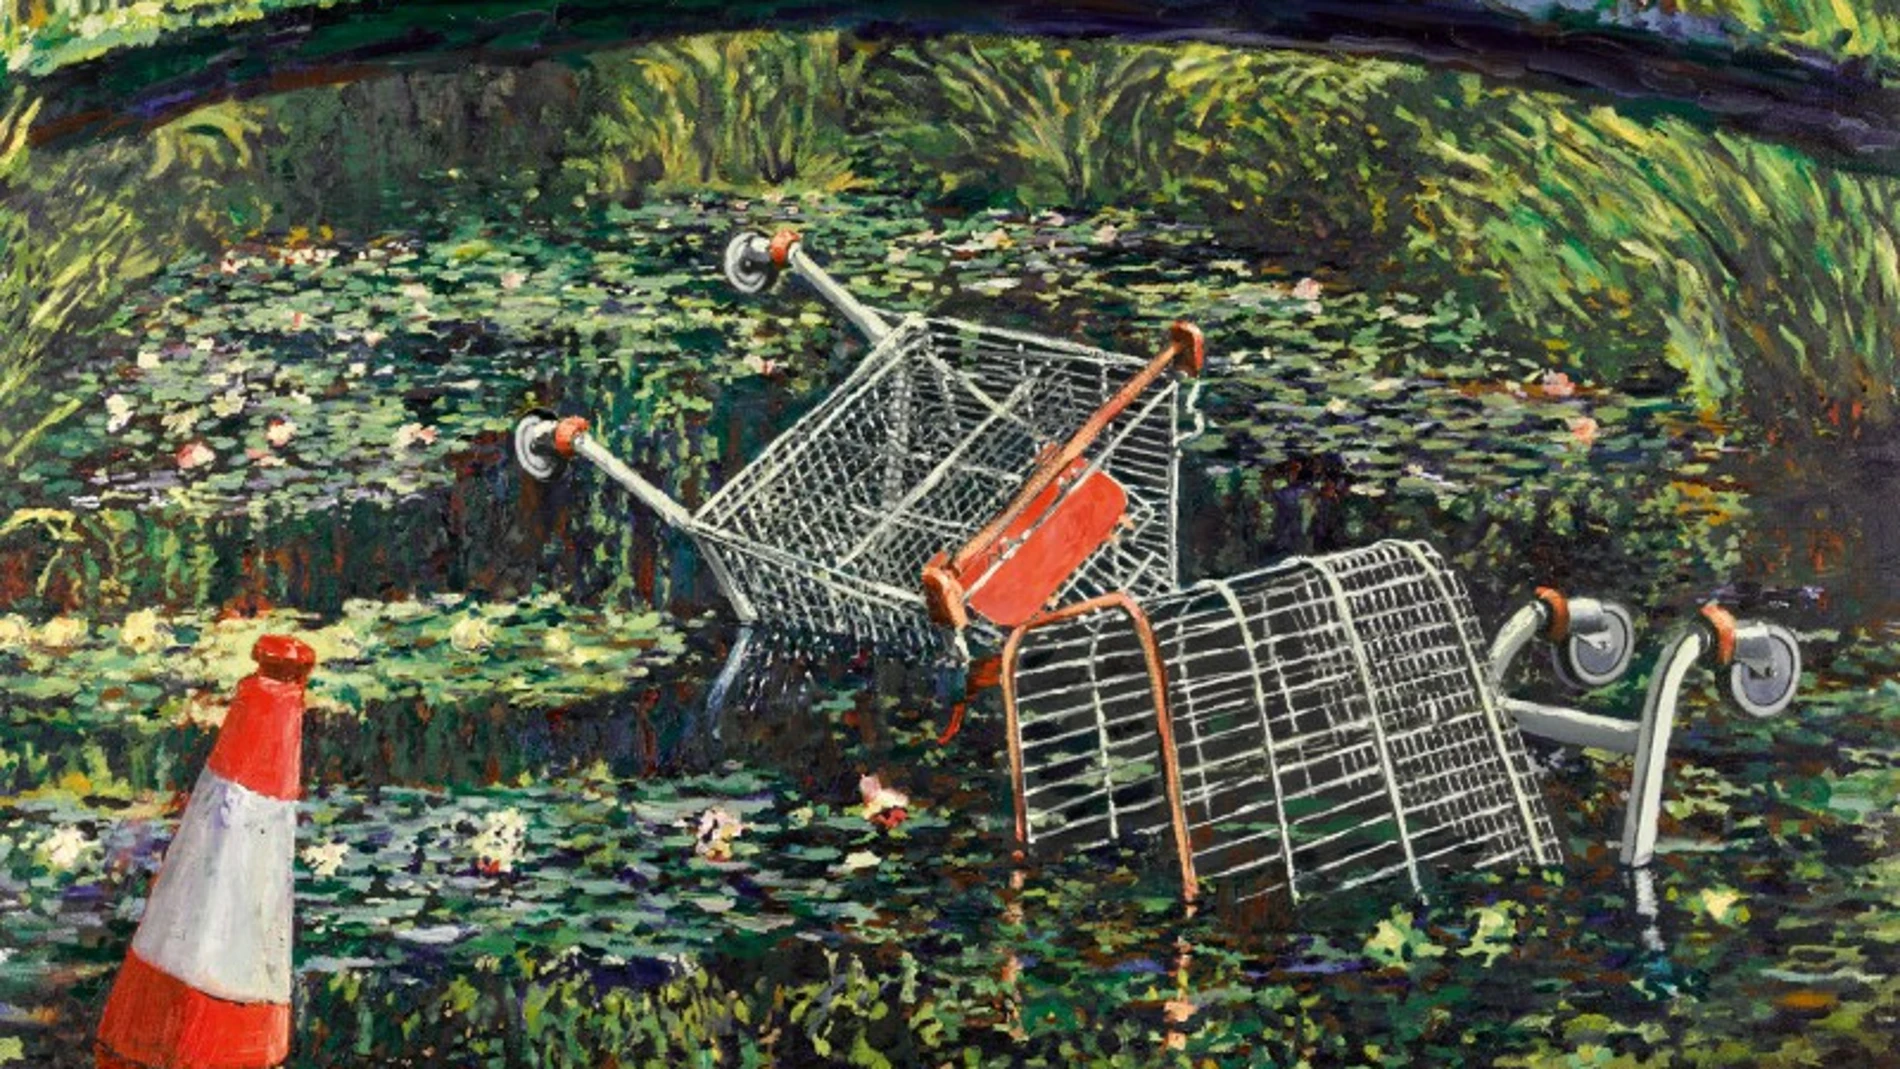 La obra 'Show me the Monet' de Banksy